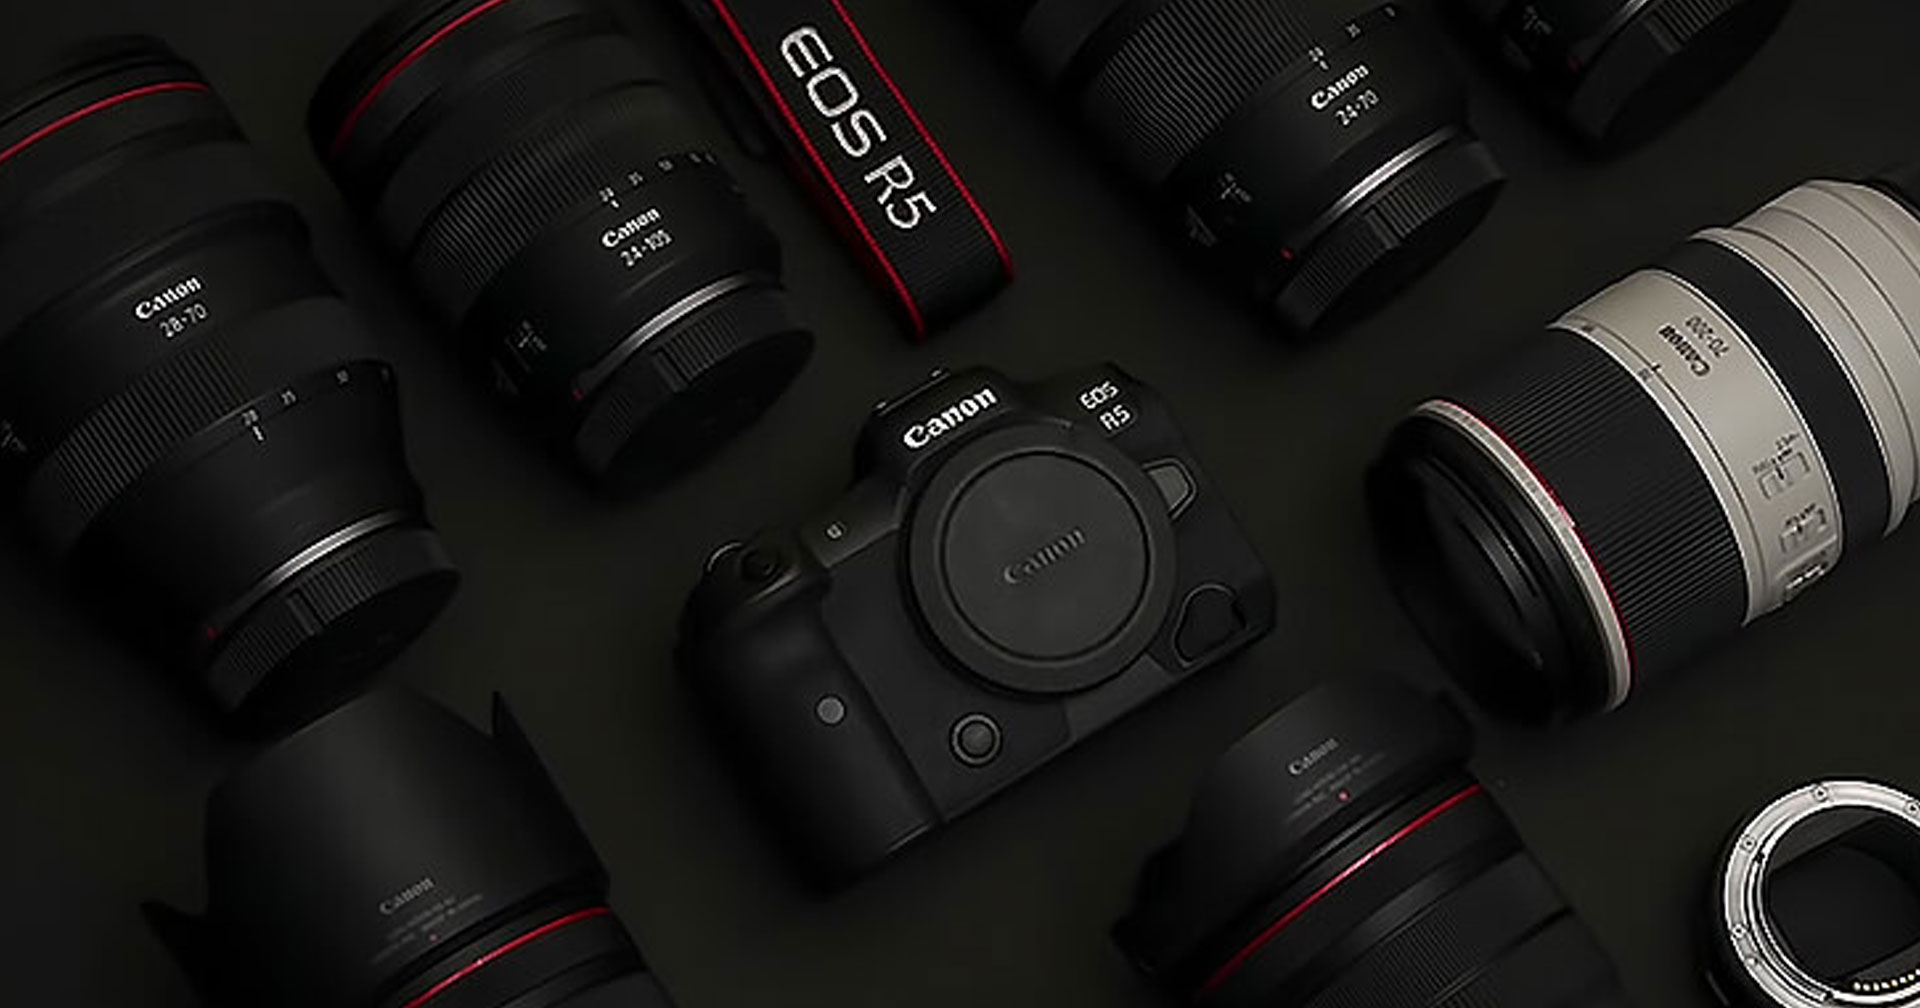 เฟิร์มแวร์ใหม่! Canon EOS R5 เพิ่มโหมด IBIS High Resolution 400MP และ Panning Assist ใน EOS R3